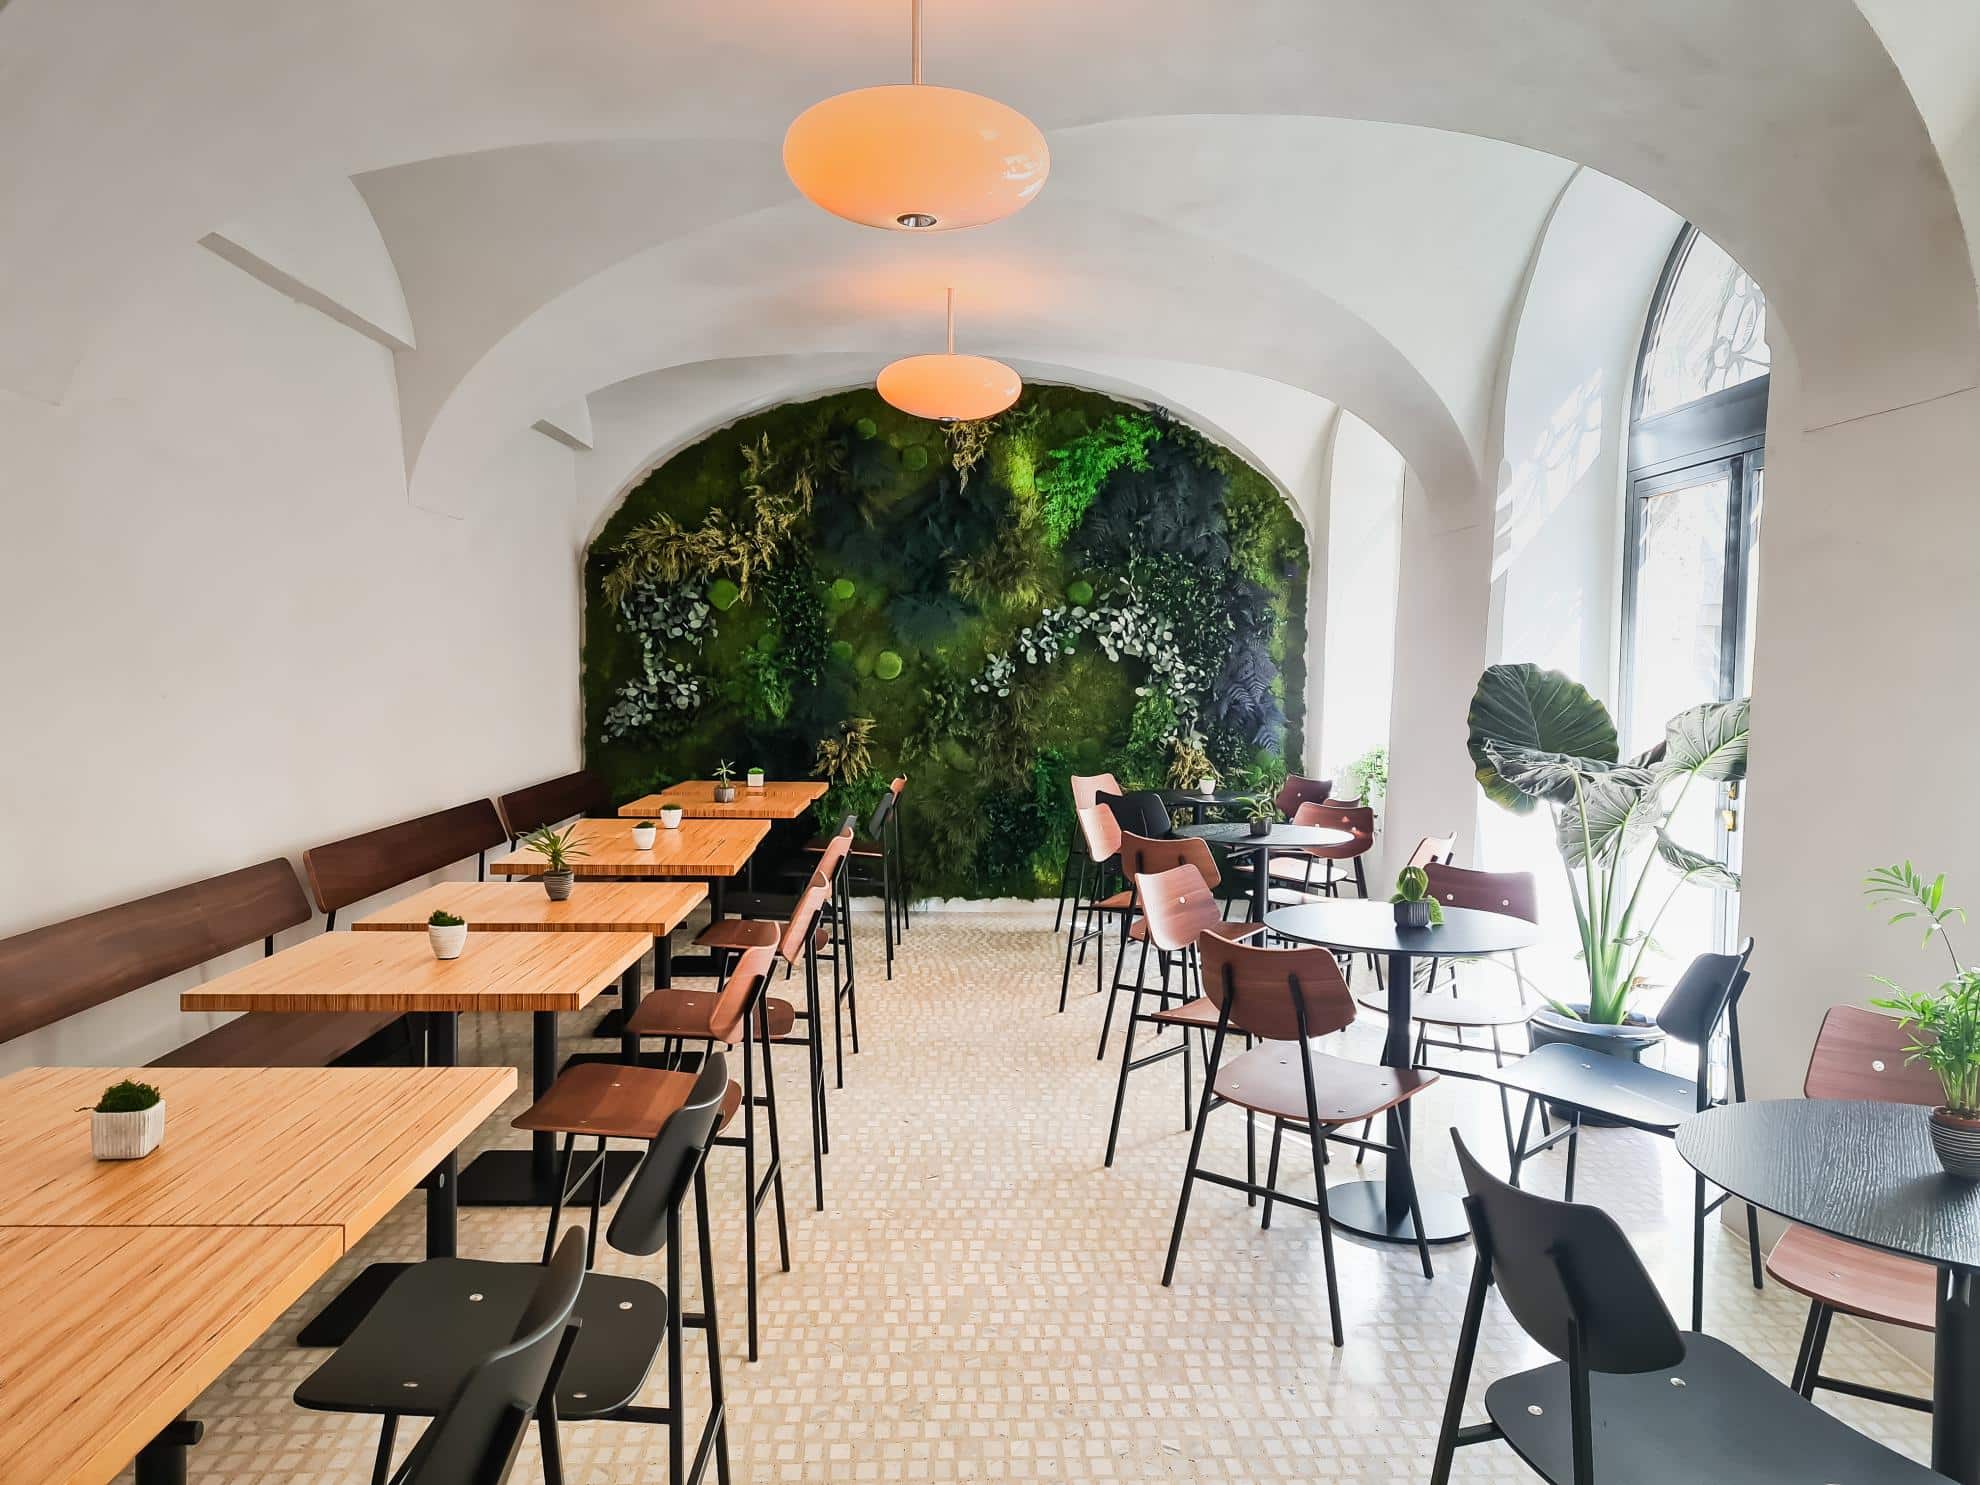 Cafe Innenraum Aufnahme mit Sicht auf Grünwand und Boden aus Terrazzo im Innrain 2